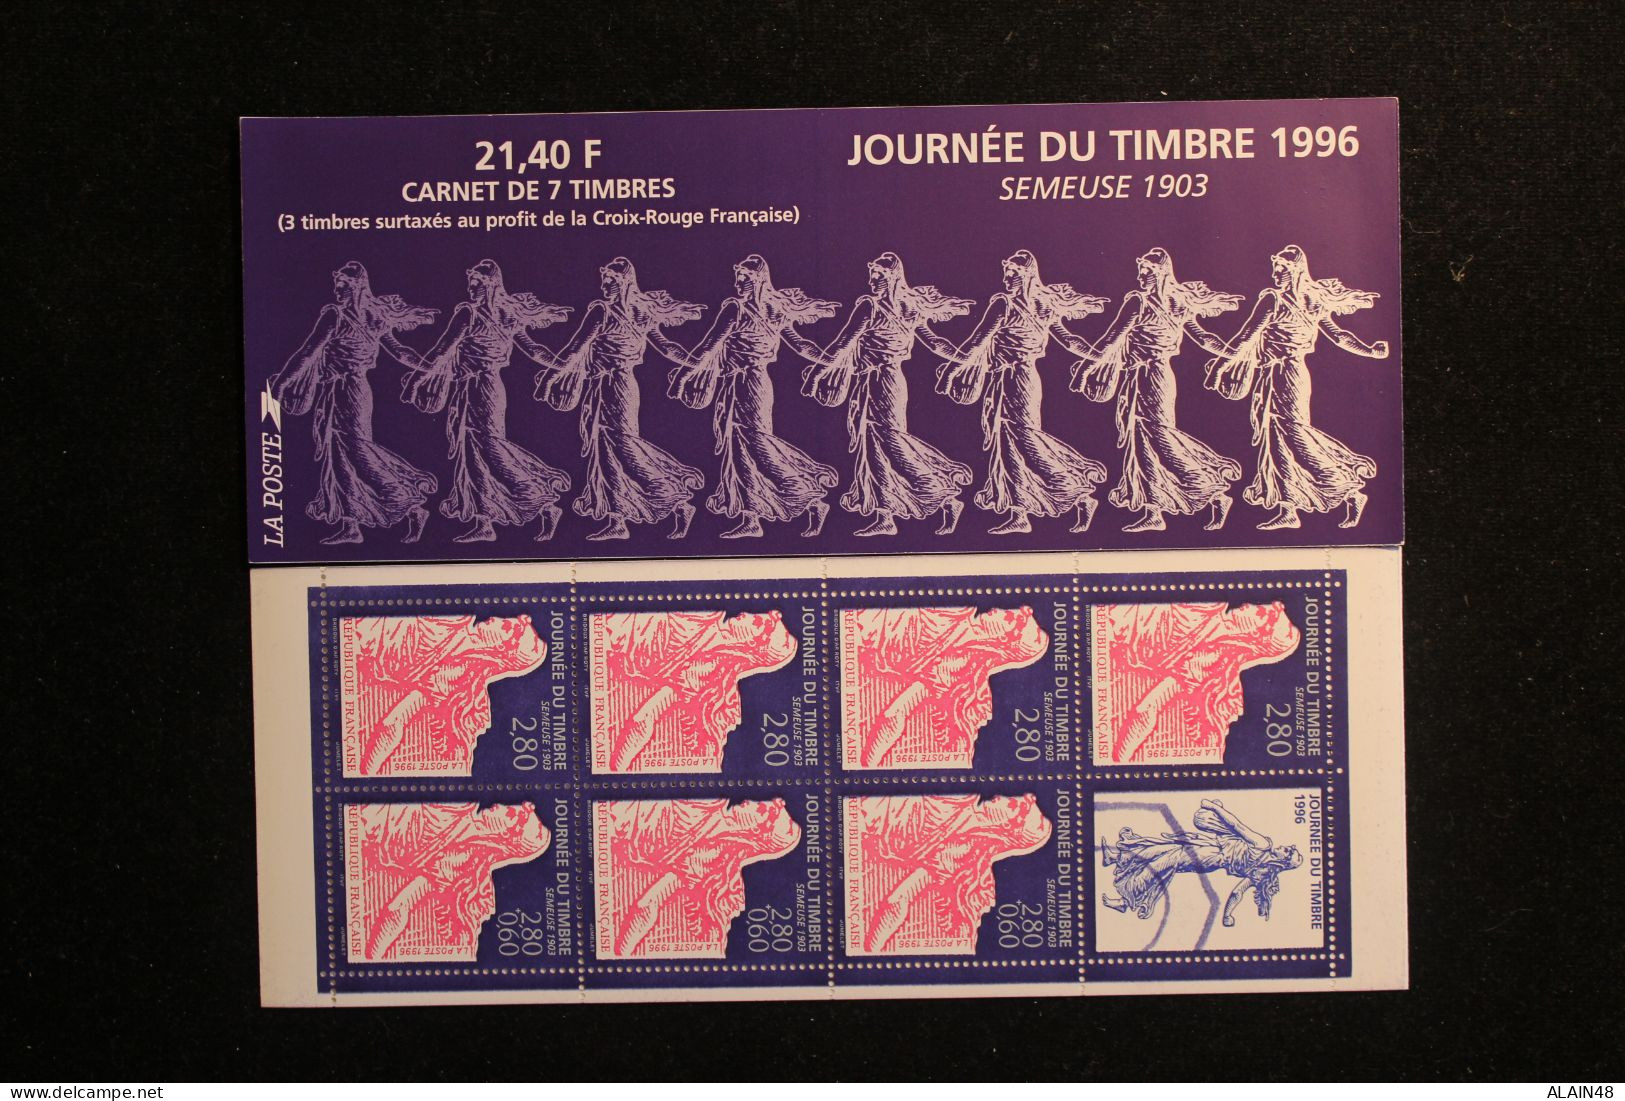 FRANCE 1996 CARNET BC2992 JOURNEE DU TIMBRE NEUFS** NON PLIE TTB SEMEUSE 1903 - Tag Der Briefmarke